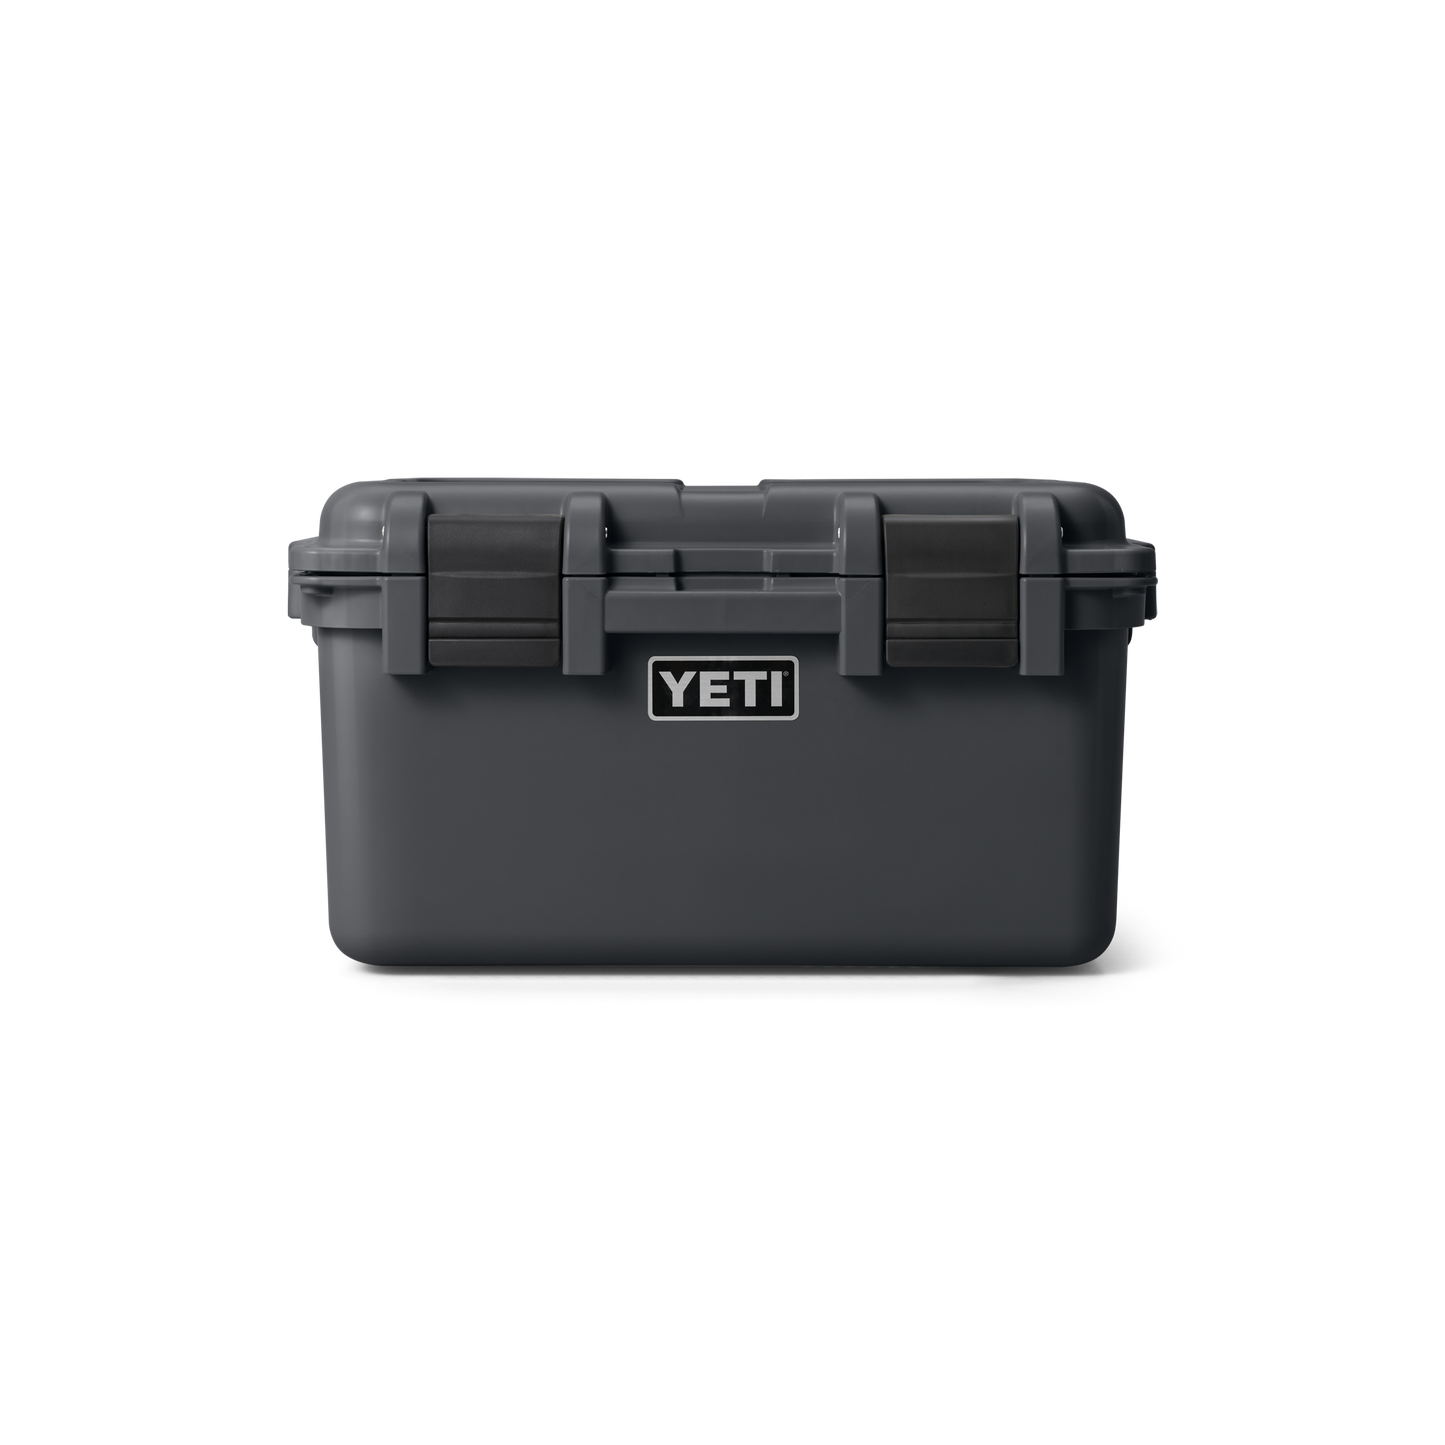 YETI LoadOut® gobox 30 Gear Case White Charcoal